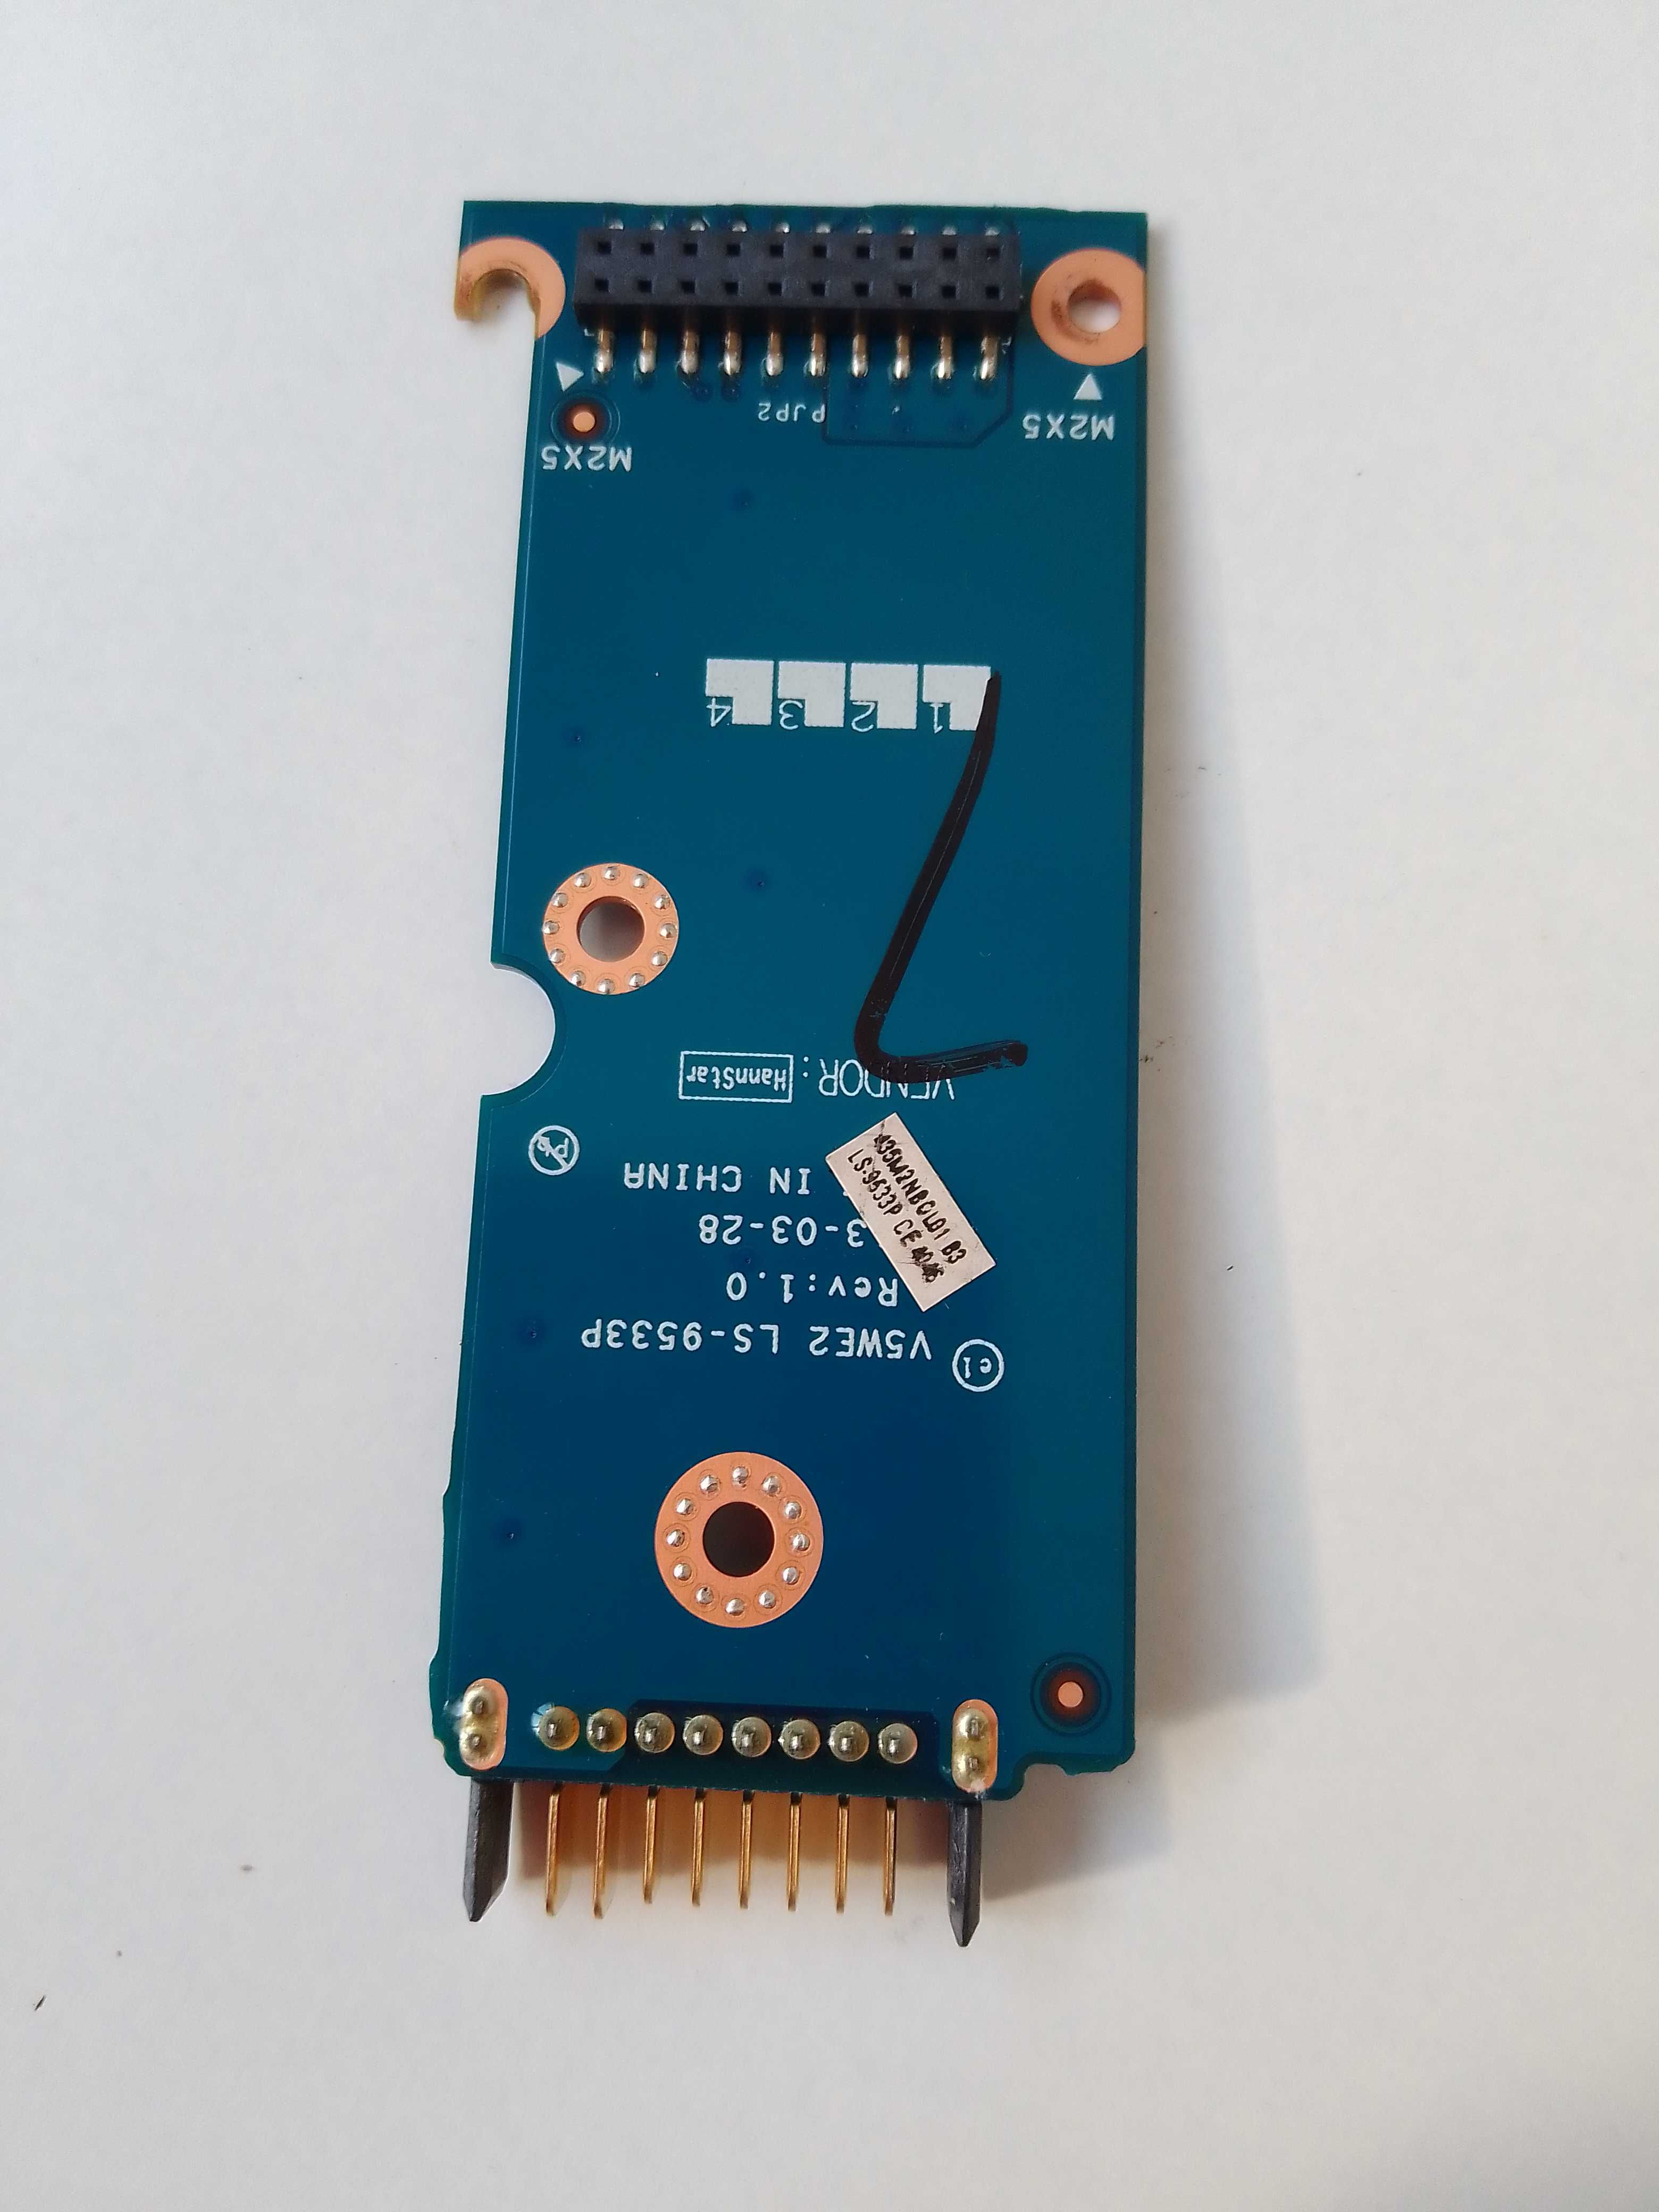 Konektor LS-9533P Packard Bell Z5WT3 (Acer) (002349)